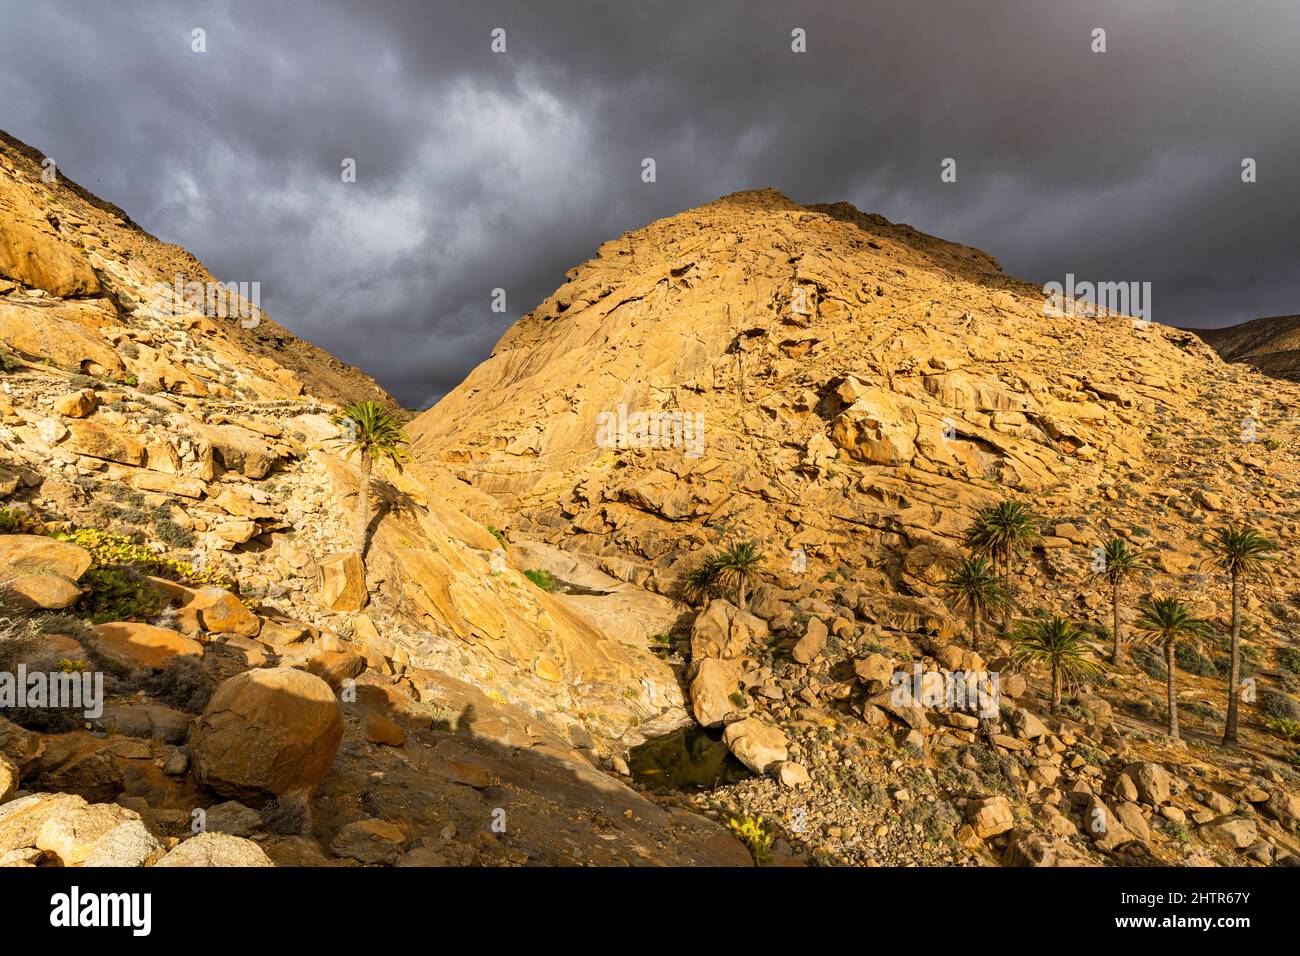 Sandstone rocks under the storm clouds in summer, Barranco de las Penitas, Fuerteventura, Canary Islands, Spain Stock Photo